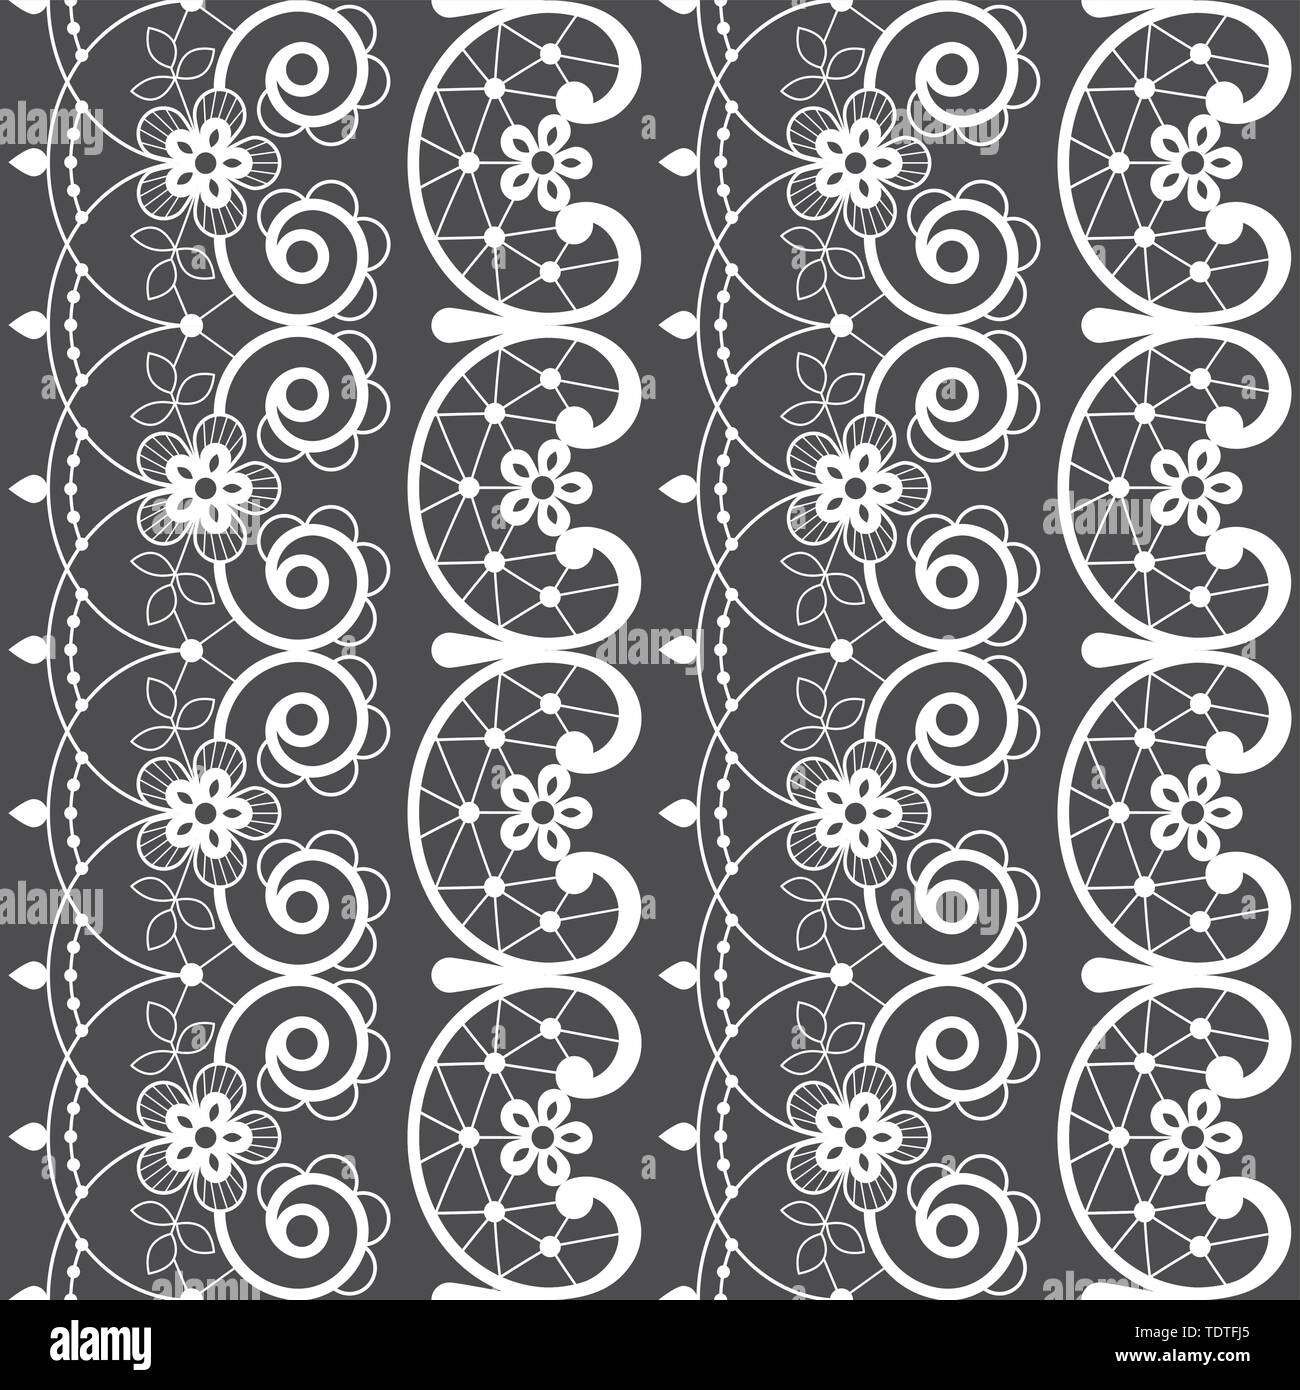 Französisch oder Englisch Spitze nahtlose Muster, sich wiederholende Design mit weißen ornamentalen Blumen - Textile Design Stock Vektor